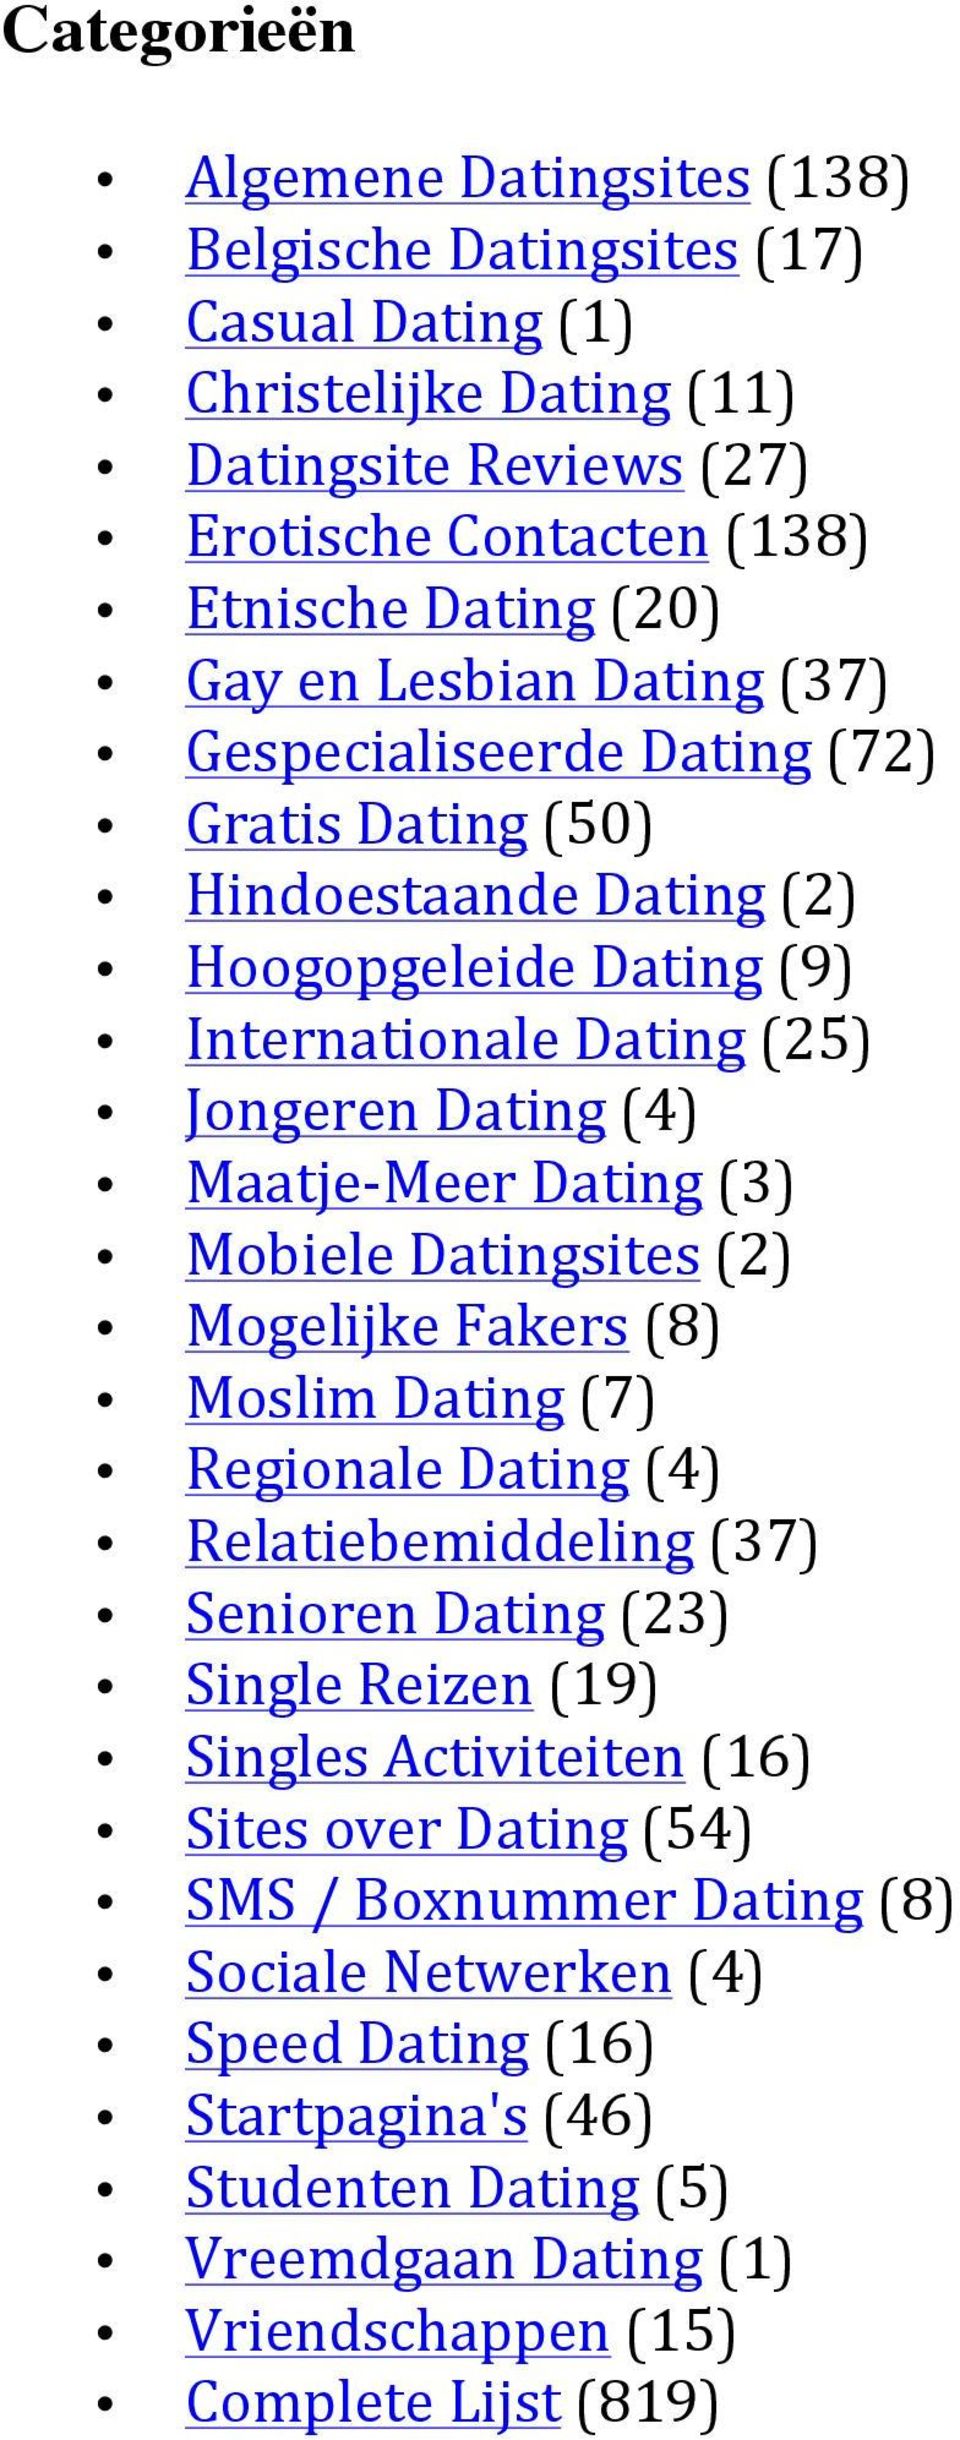 Dating (3) Mobiele Datingsites (2) Mogelijke Fakers (8) Moslim Dating (7) Regionale Dating (4) Relatiebemiddeling (37) Senioren Dating (23) Single Reizen (19) Singles Activiteiten (16)